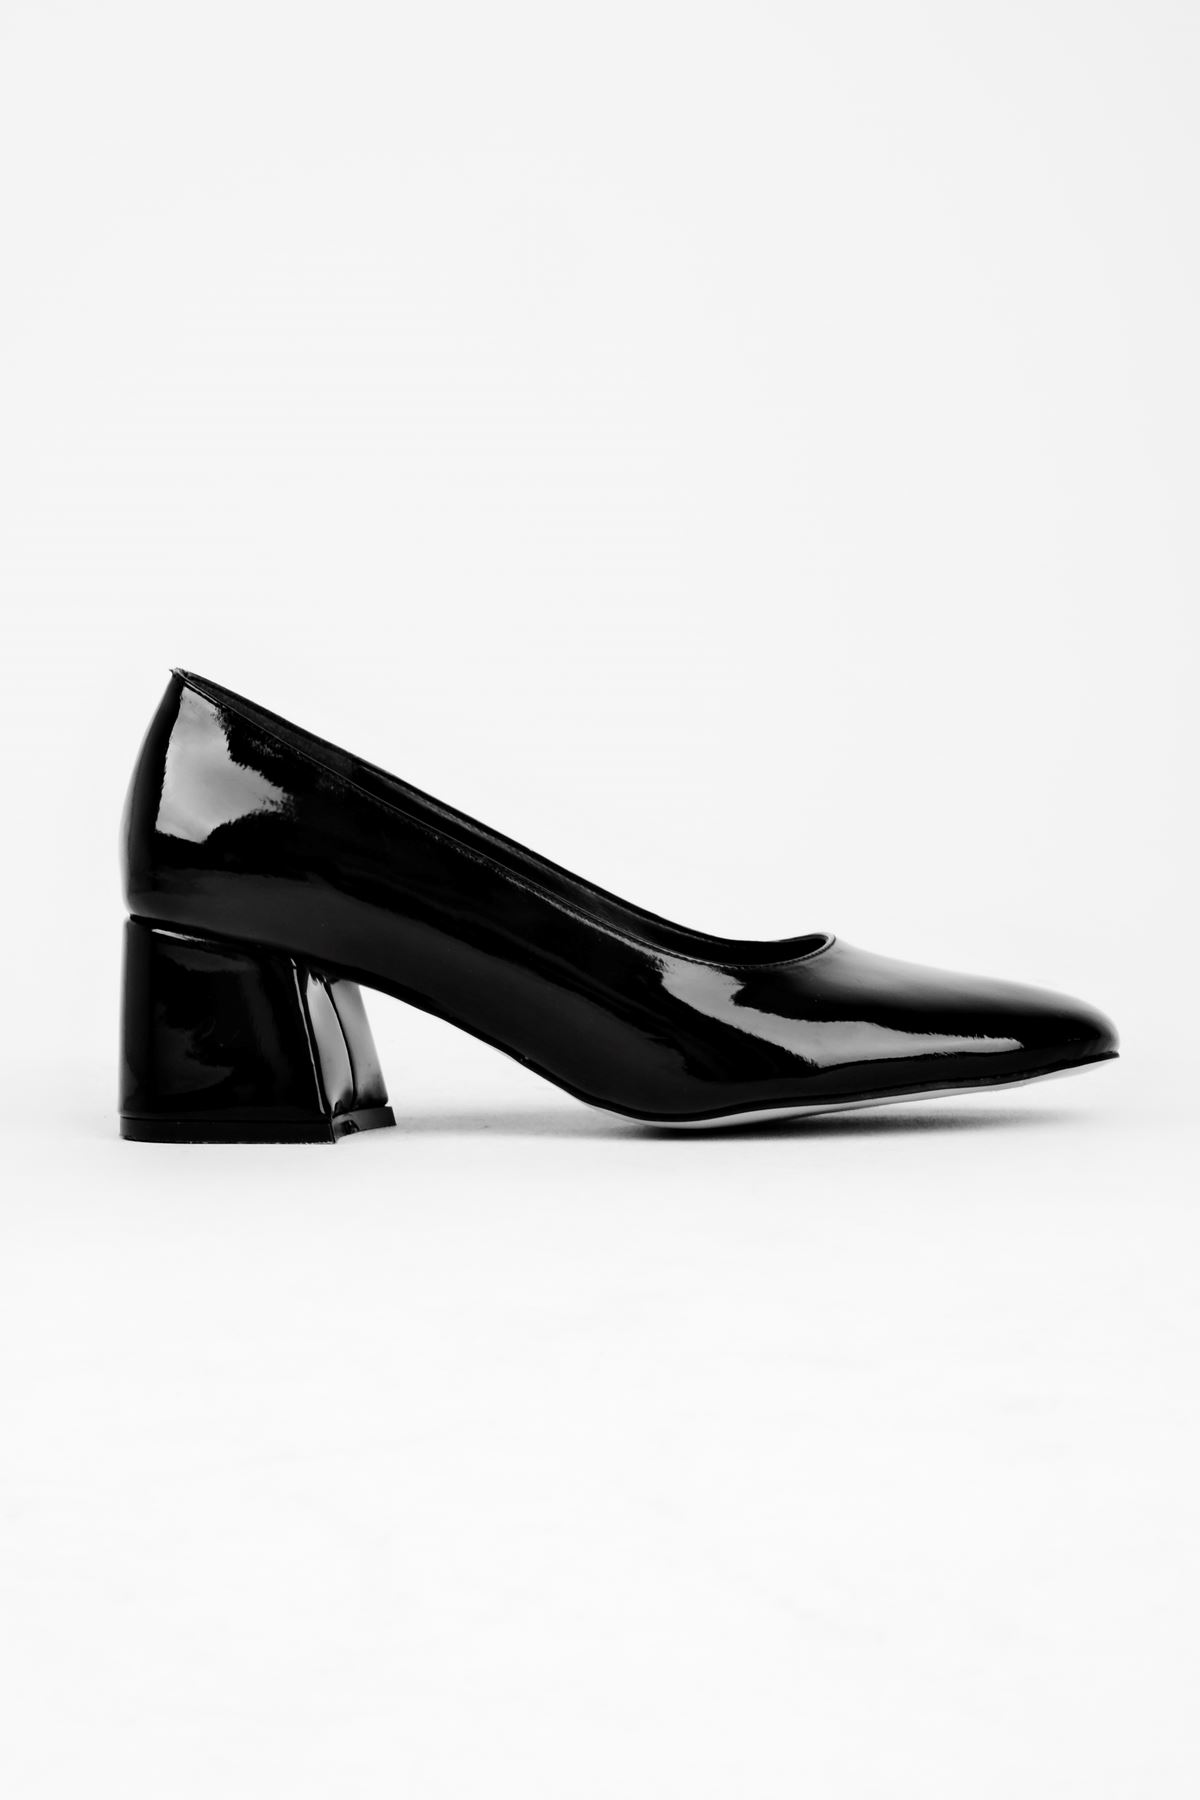 Edna Kadın Topuklu Ayakkabı Yuvarlak Burun-Rugan Siyah